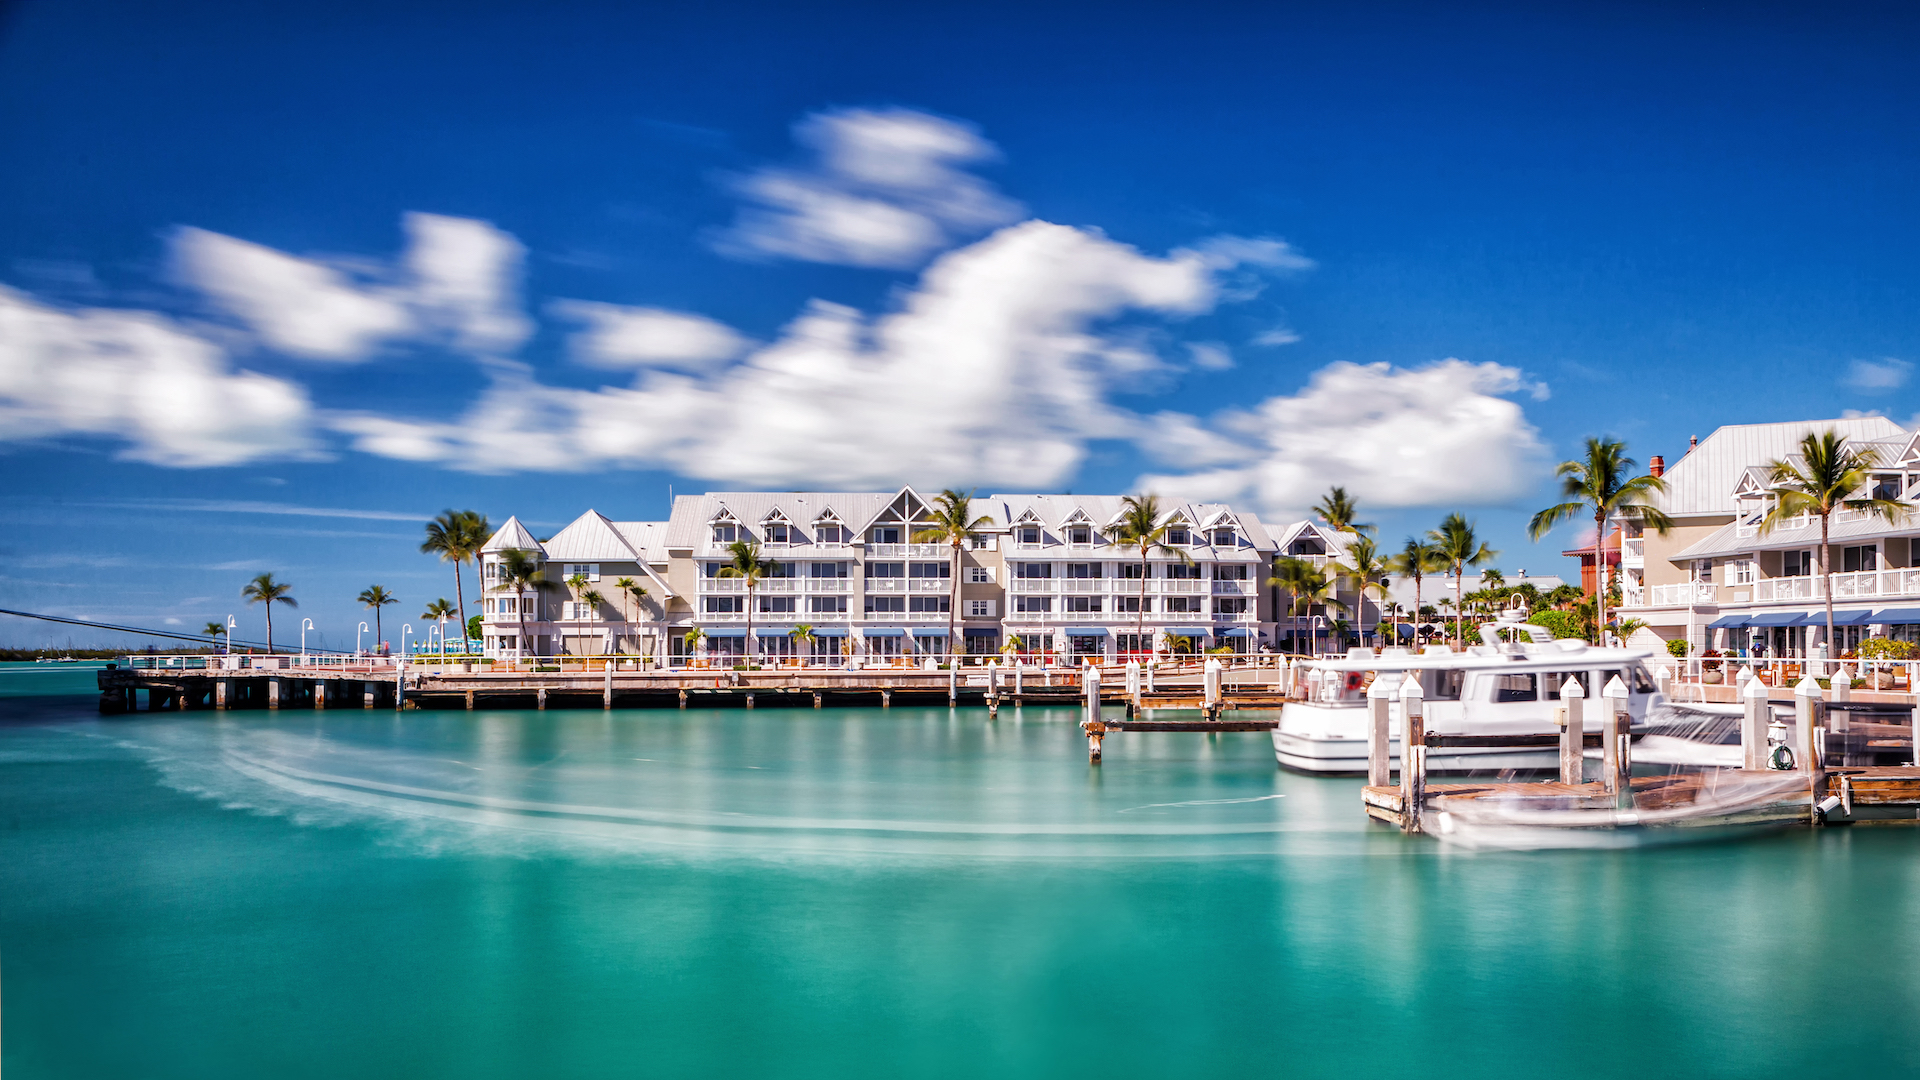 Margaritaville Key West Resort & Marina - HD Wallpaper 